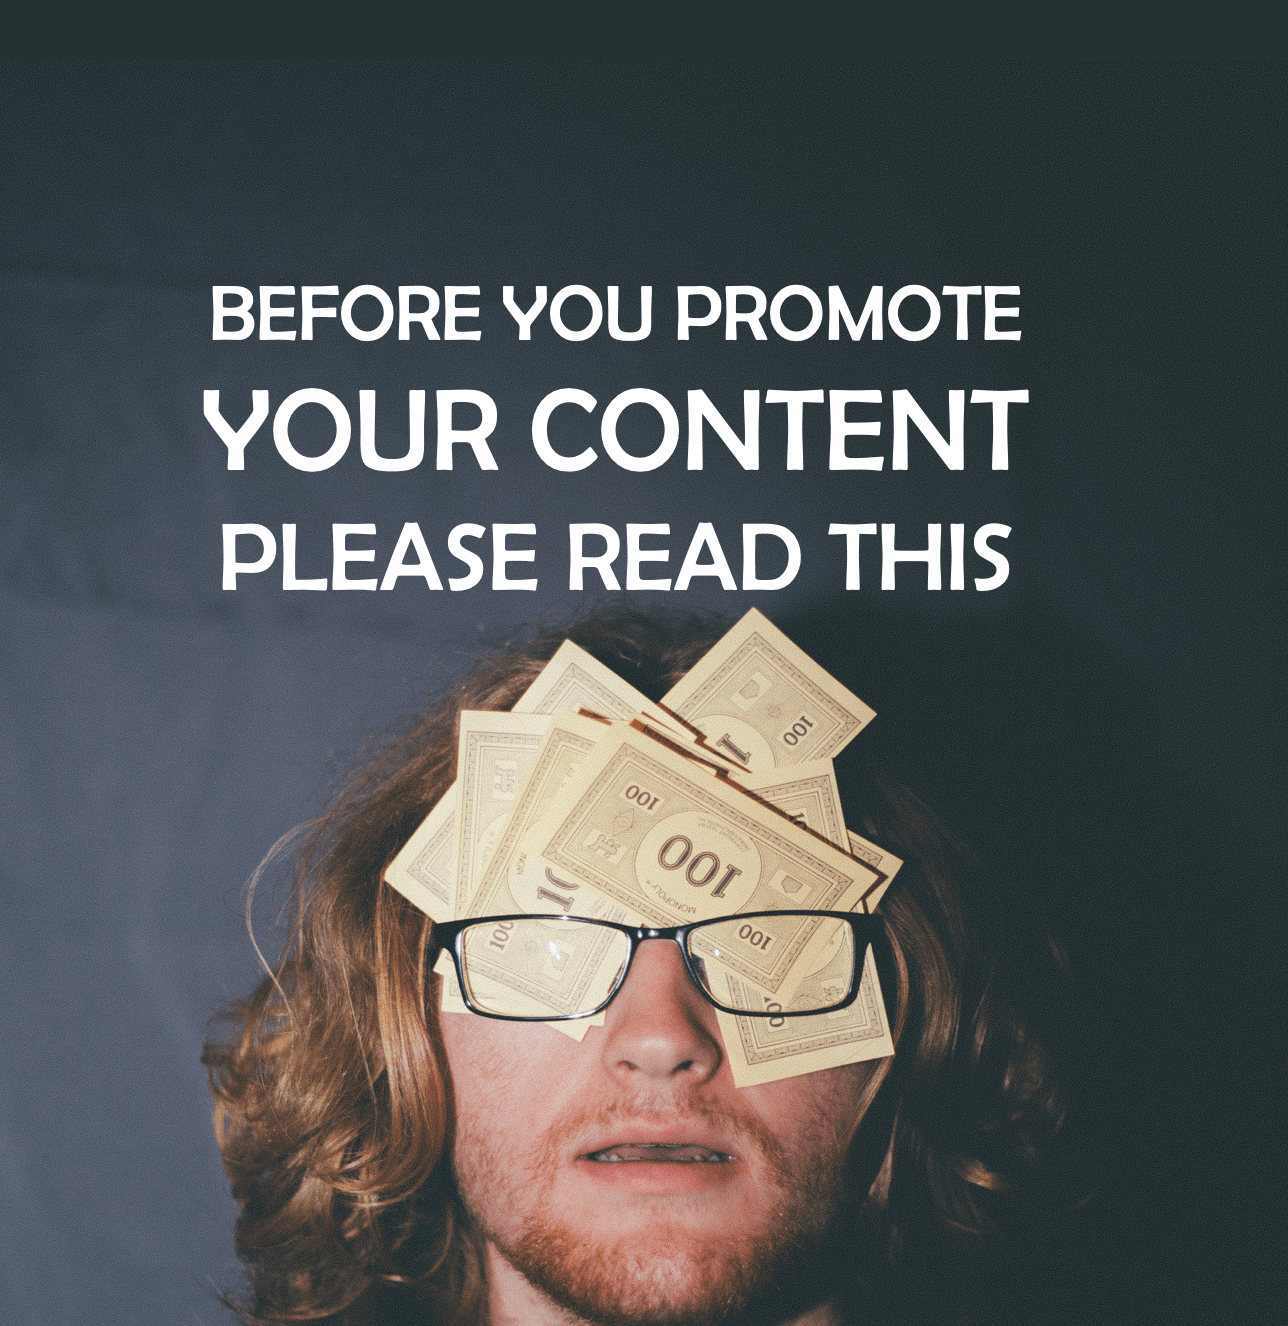 content promotion